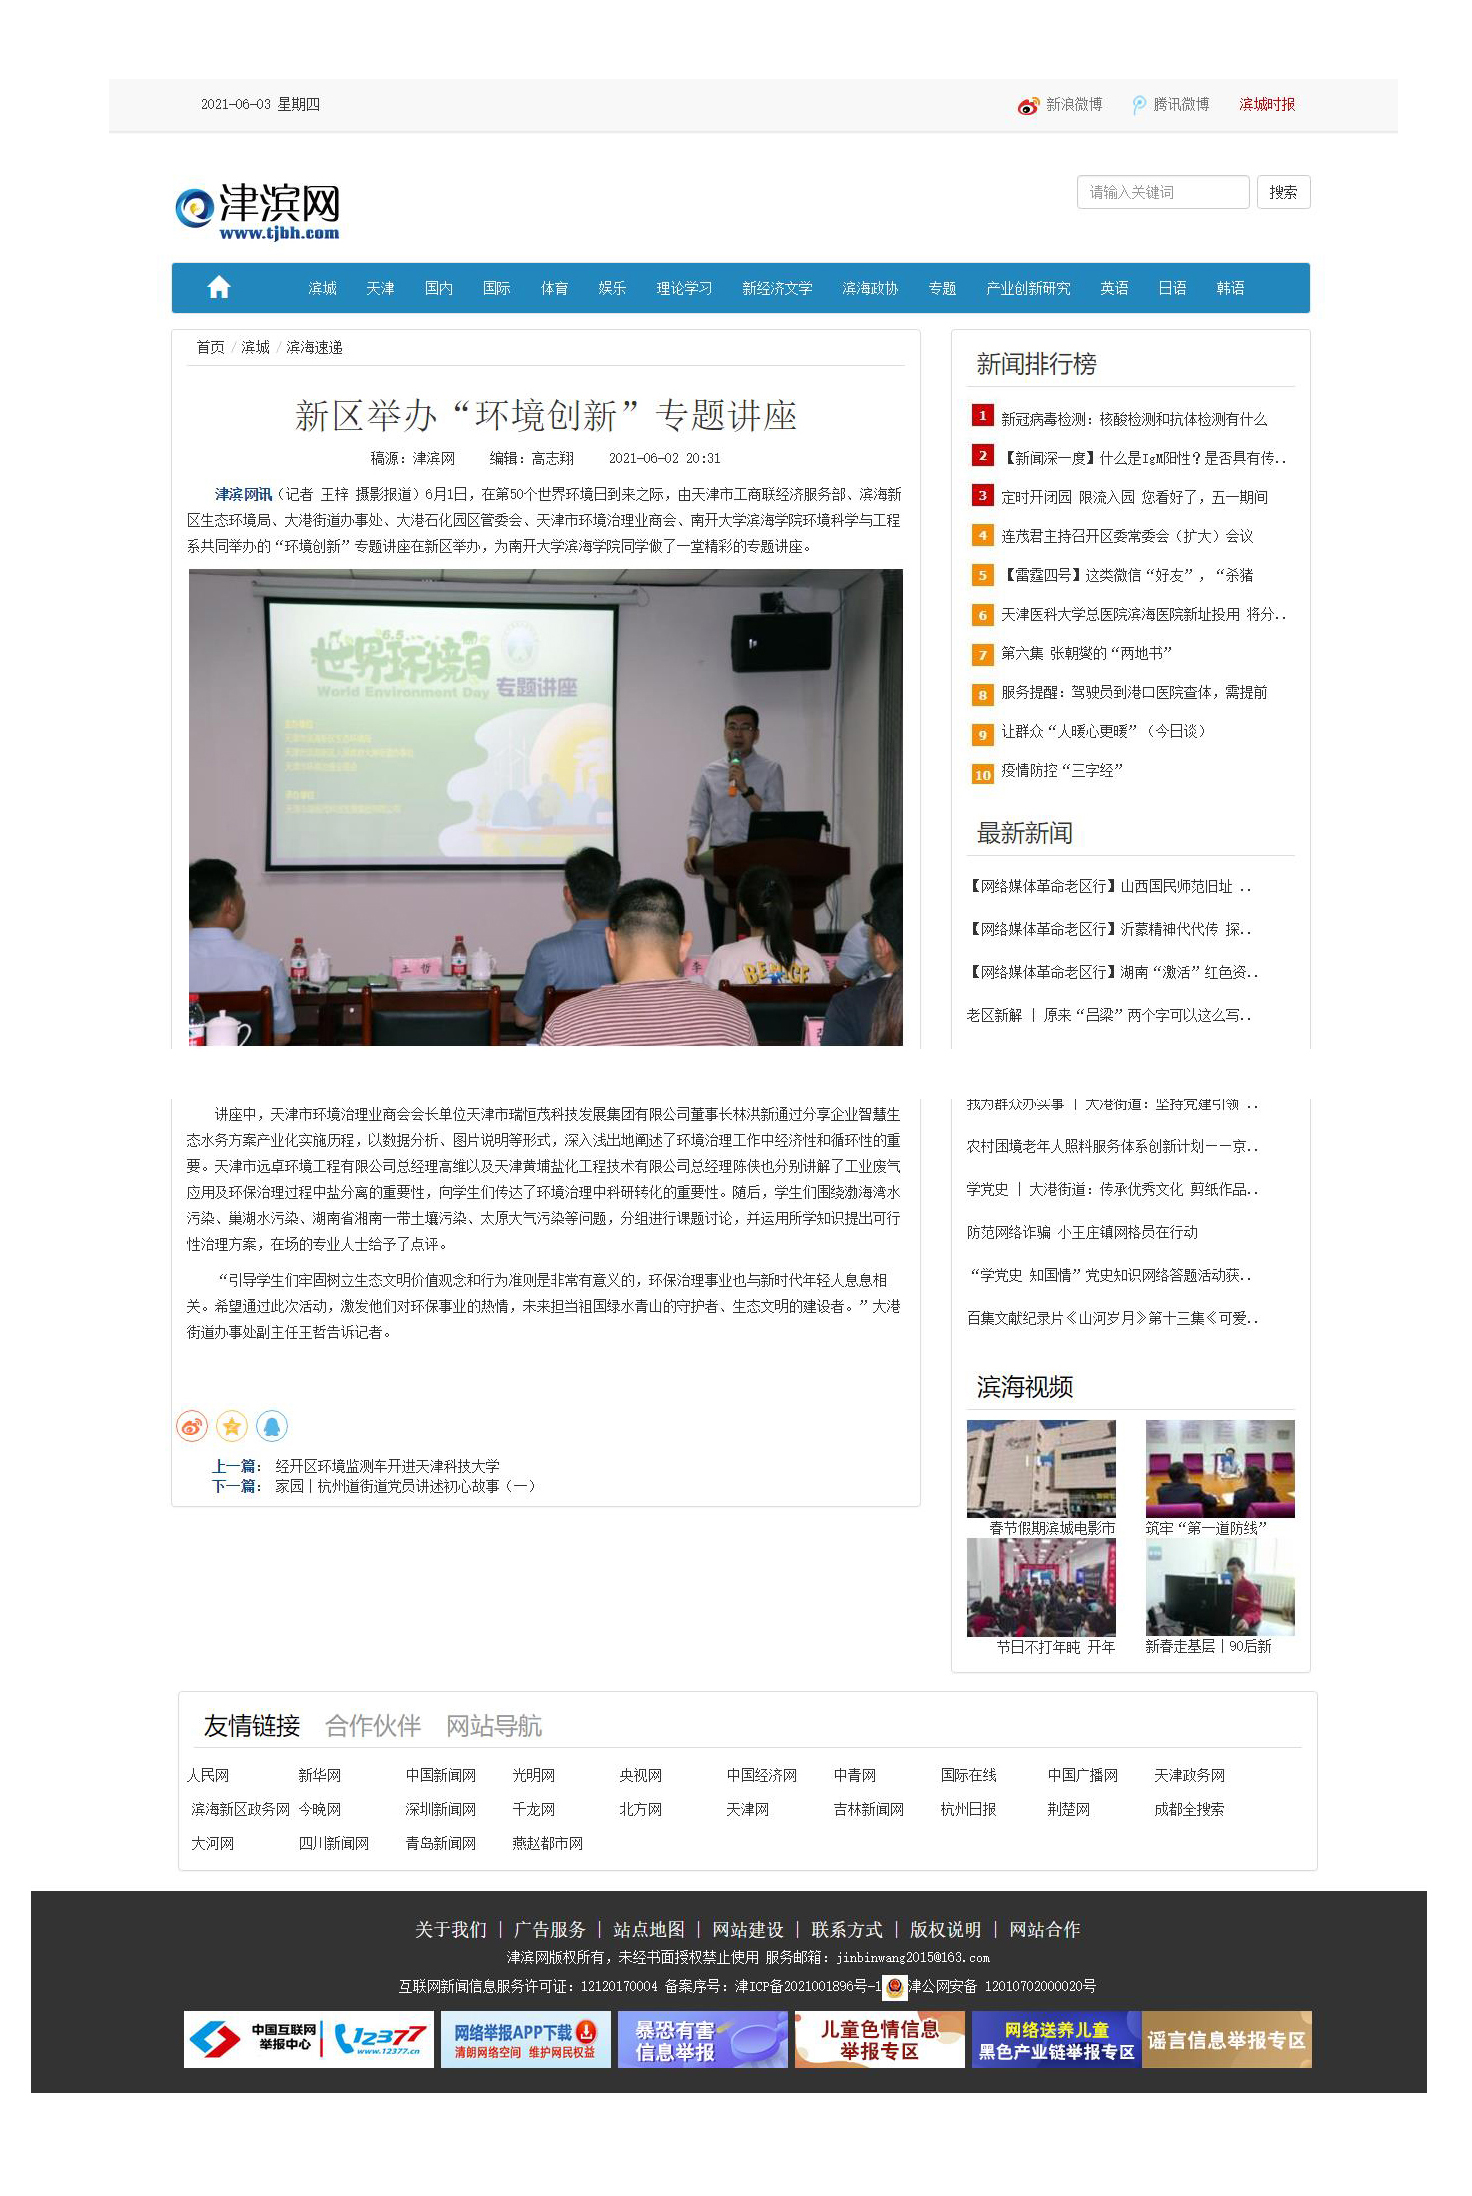 2021-06-02津滨网新区举办环境创新讲座.jpg